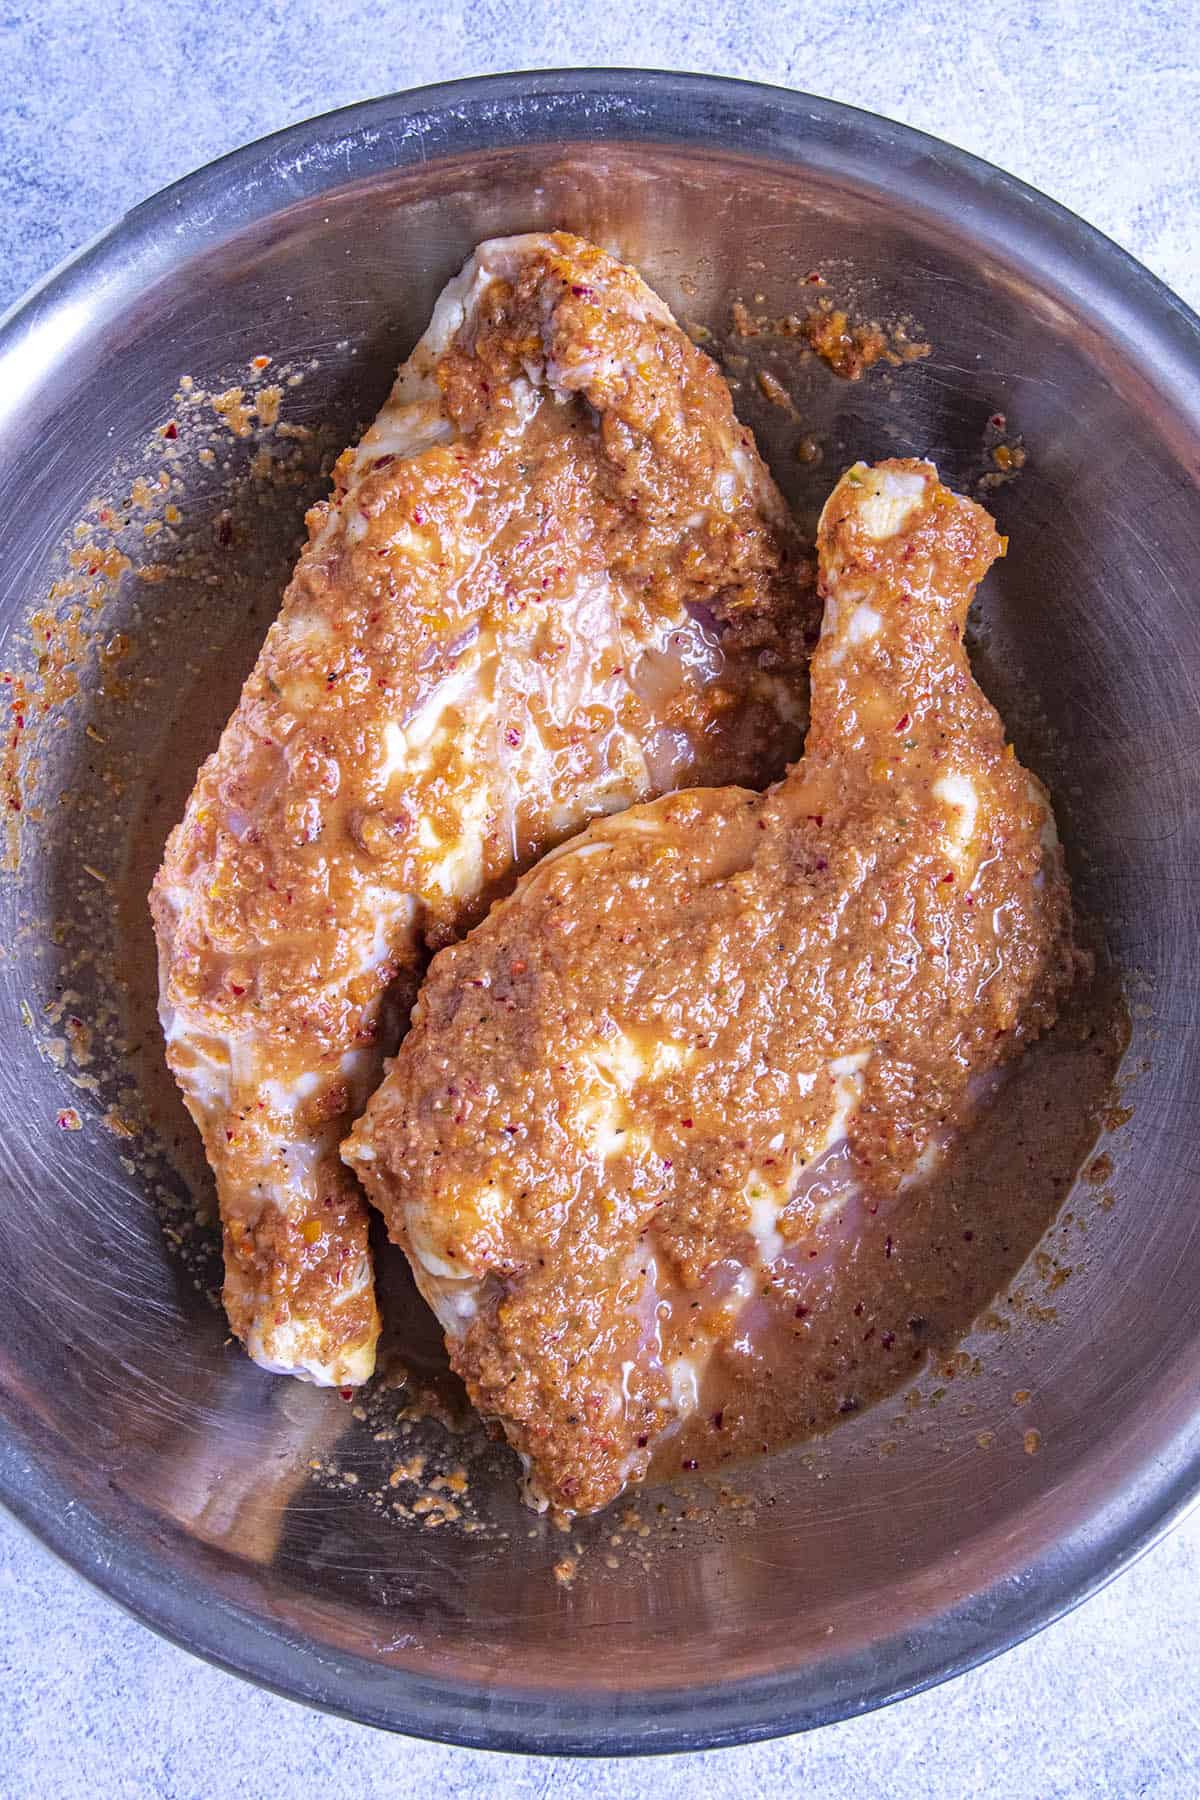 Marinating pieces of chicken to make Jerk Chicken